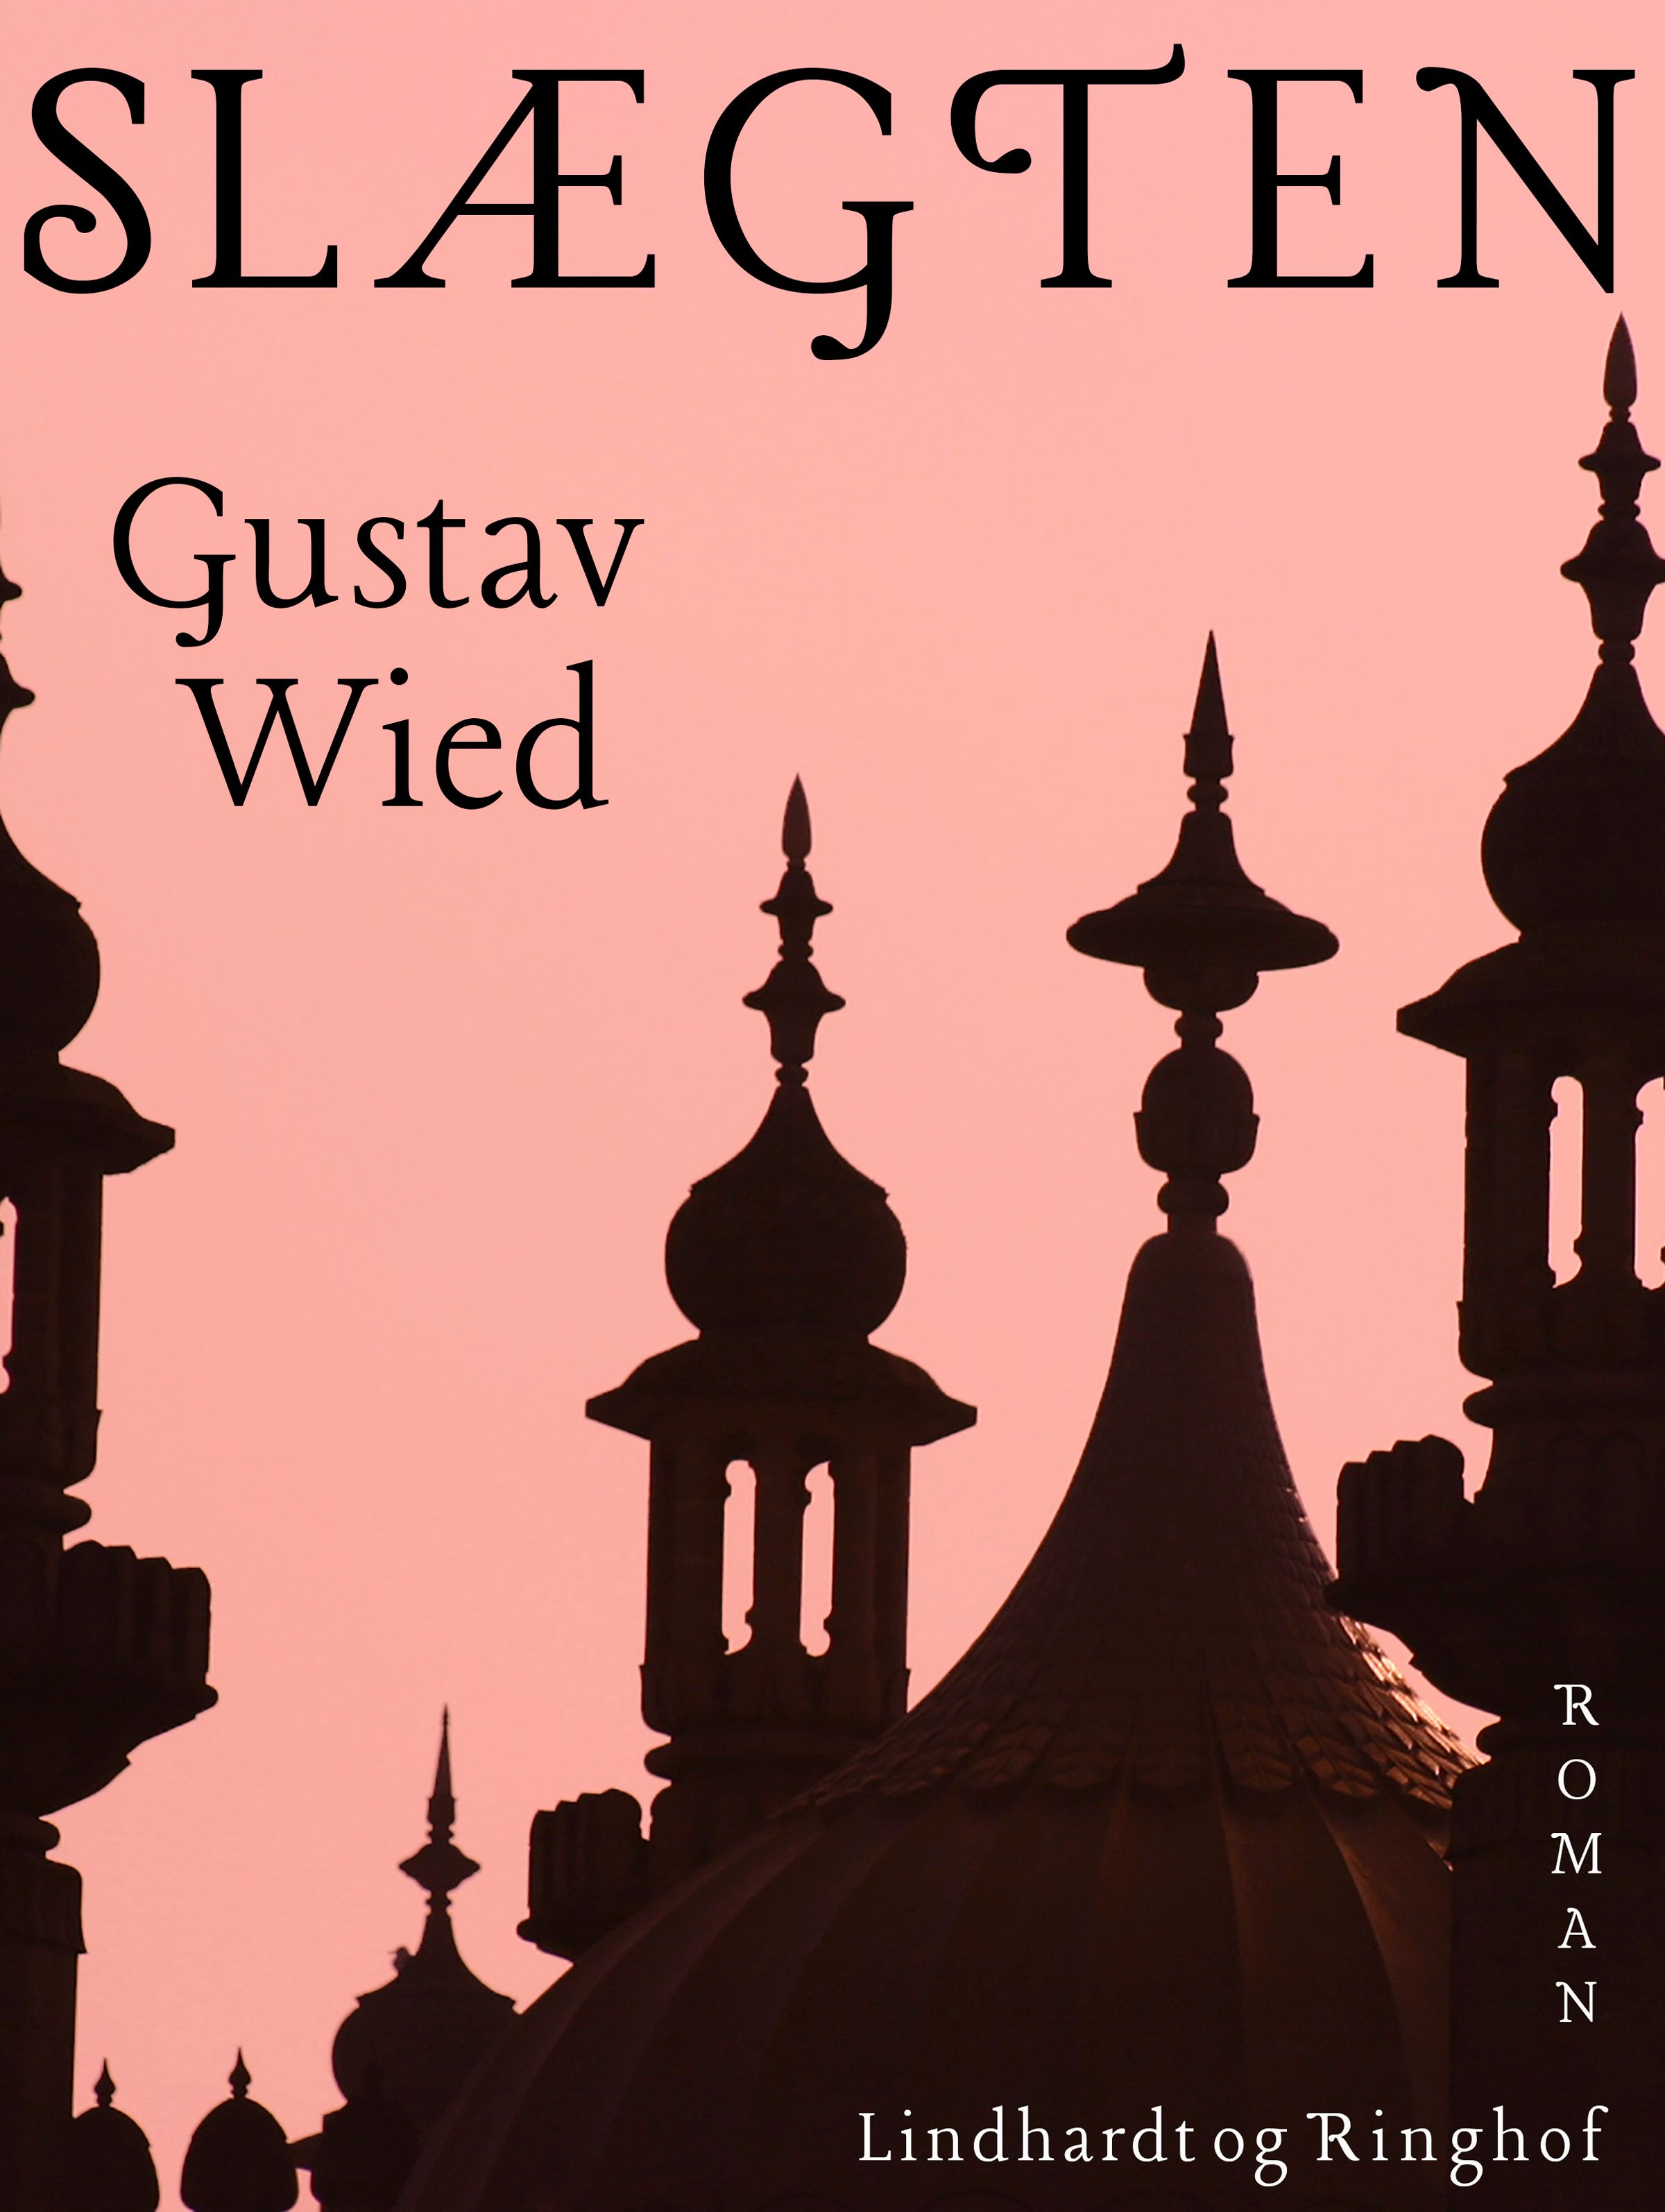 Slægten, e-bog af Gustav Wied